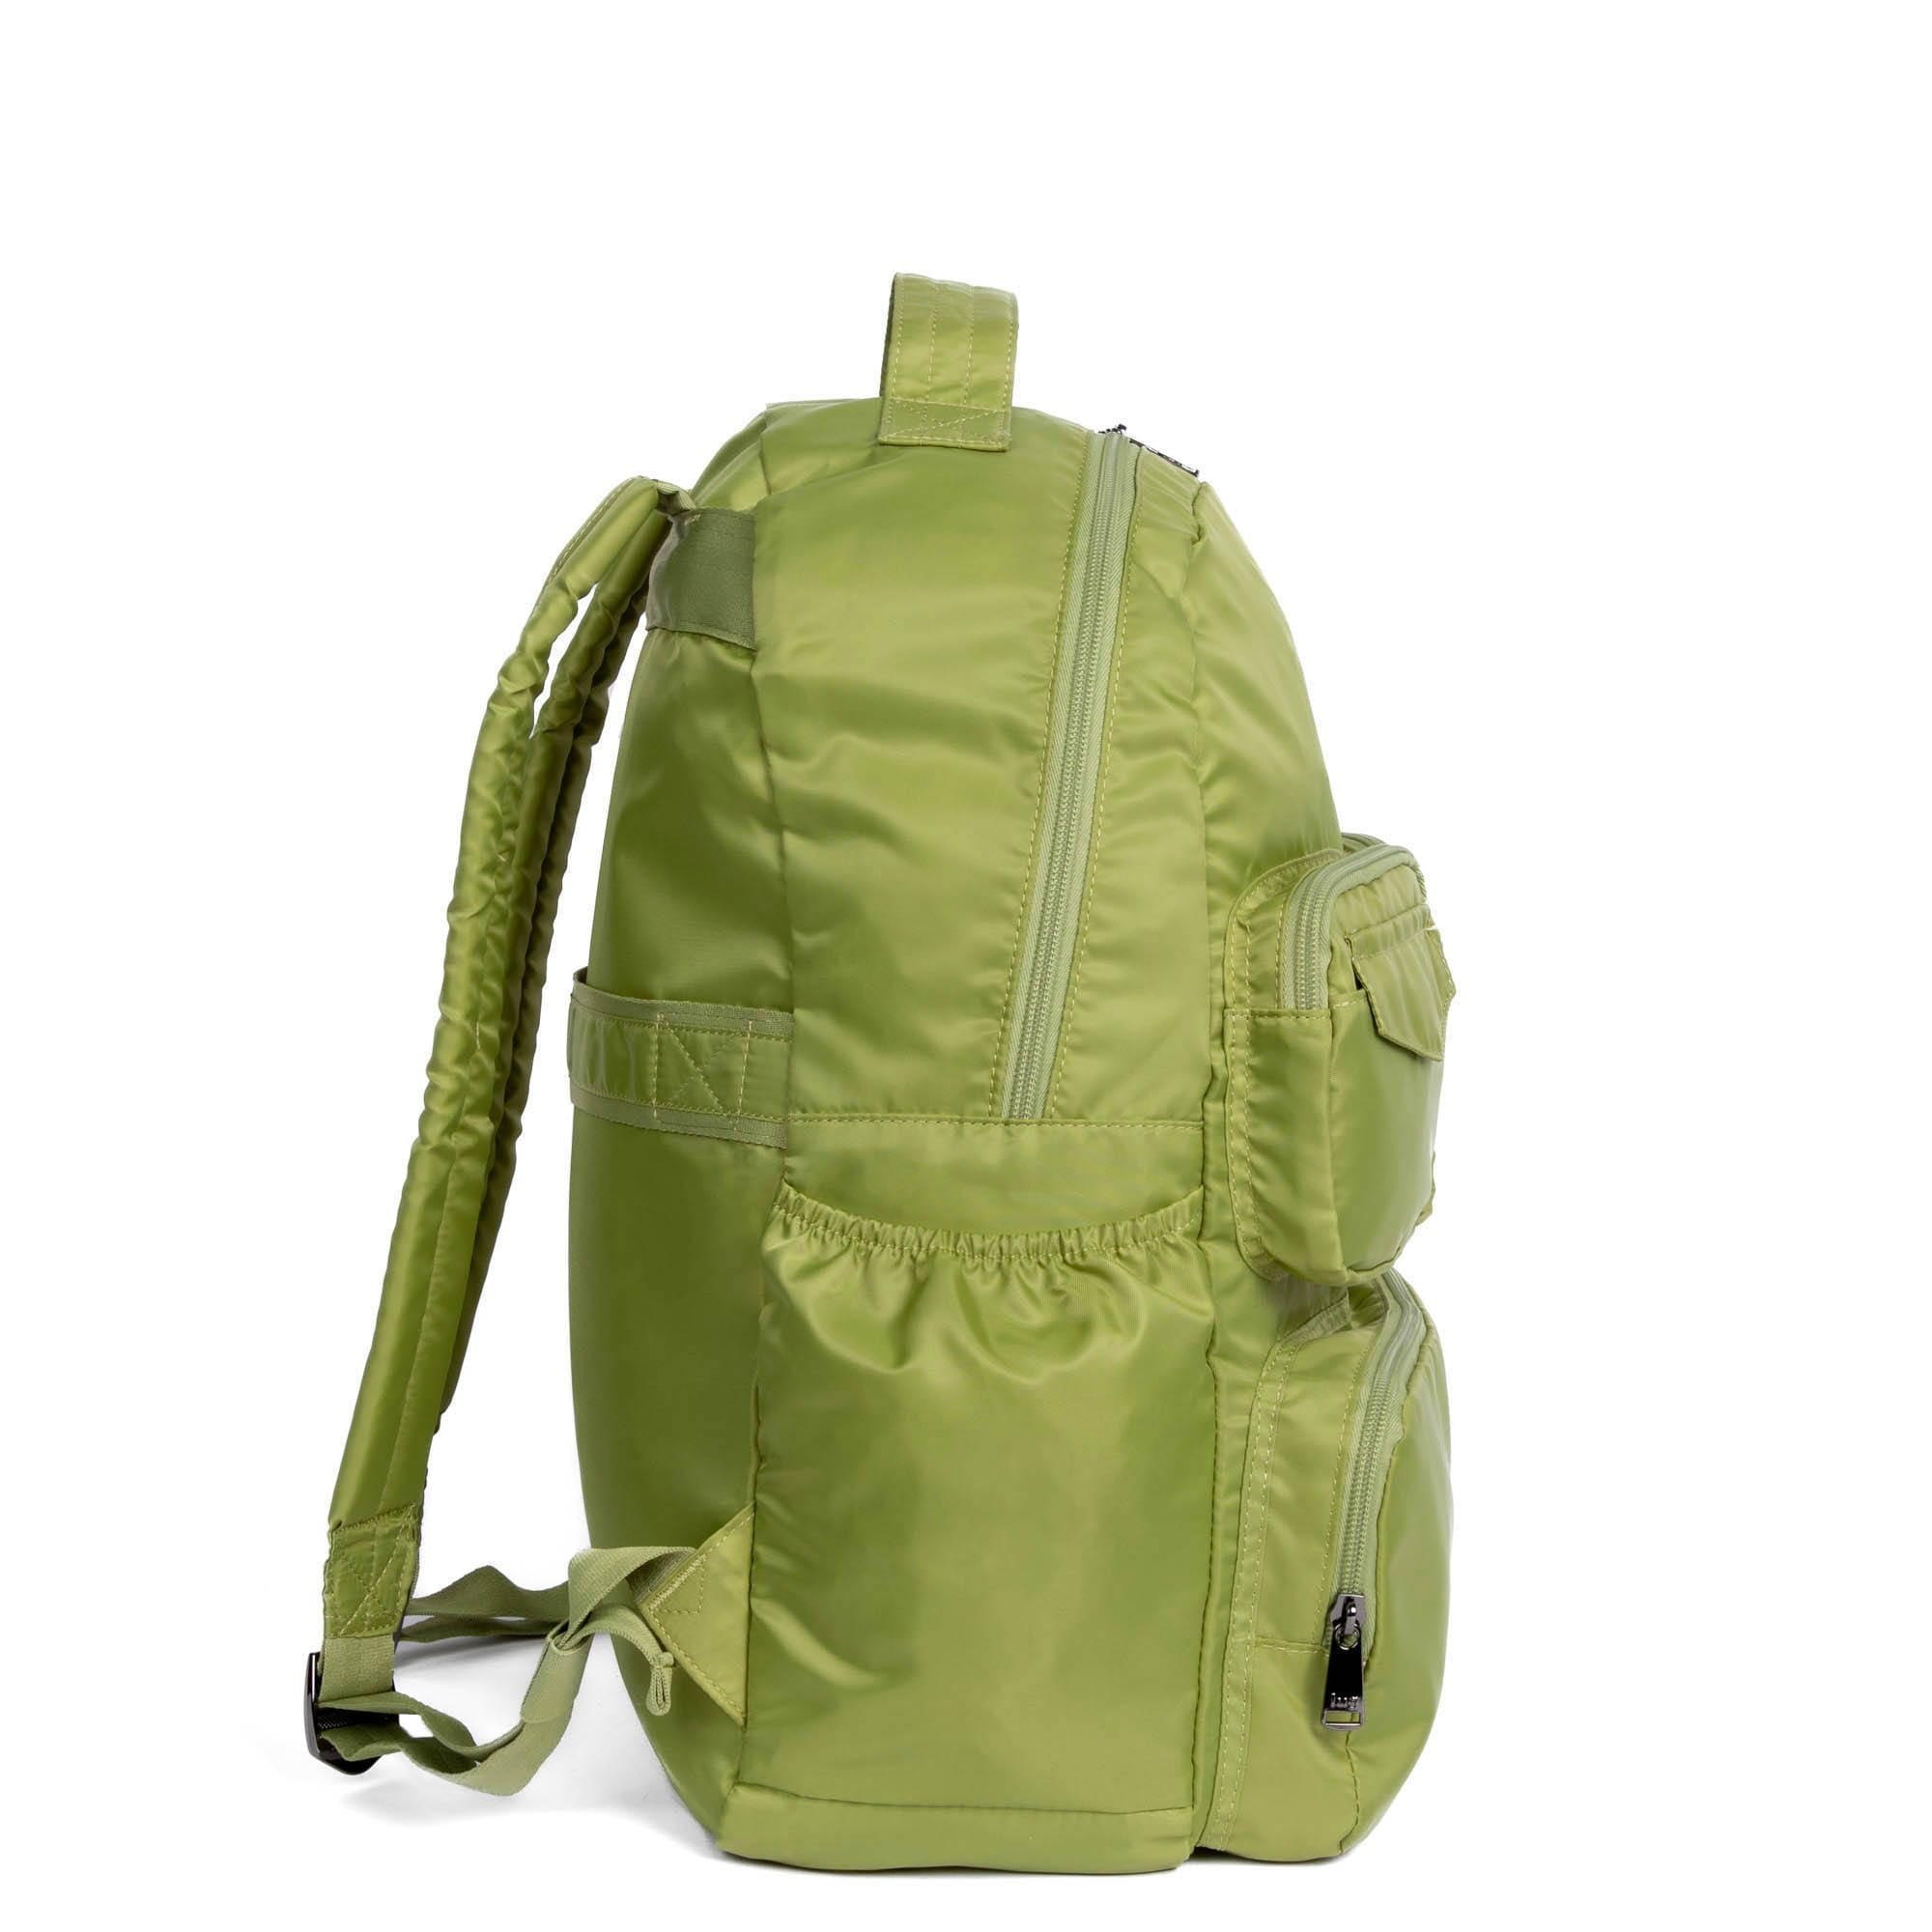 Puddle Jumper SE Packable Backpack - Luglife.com